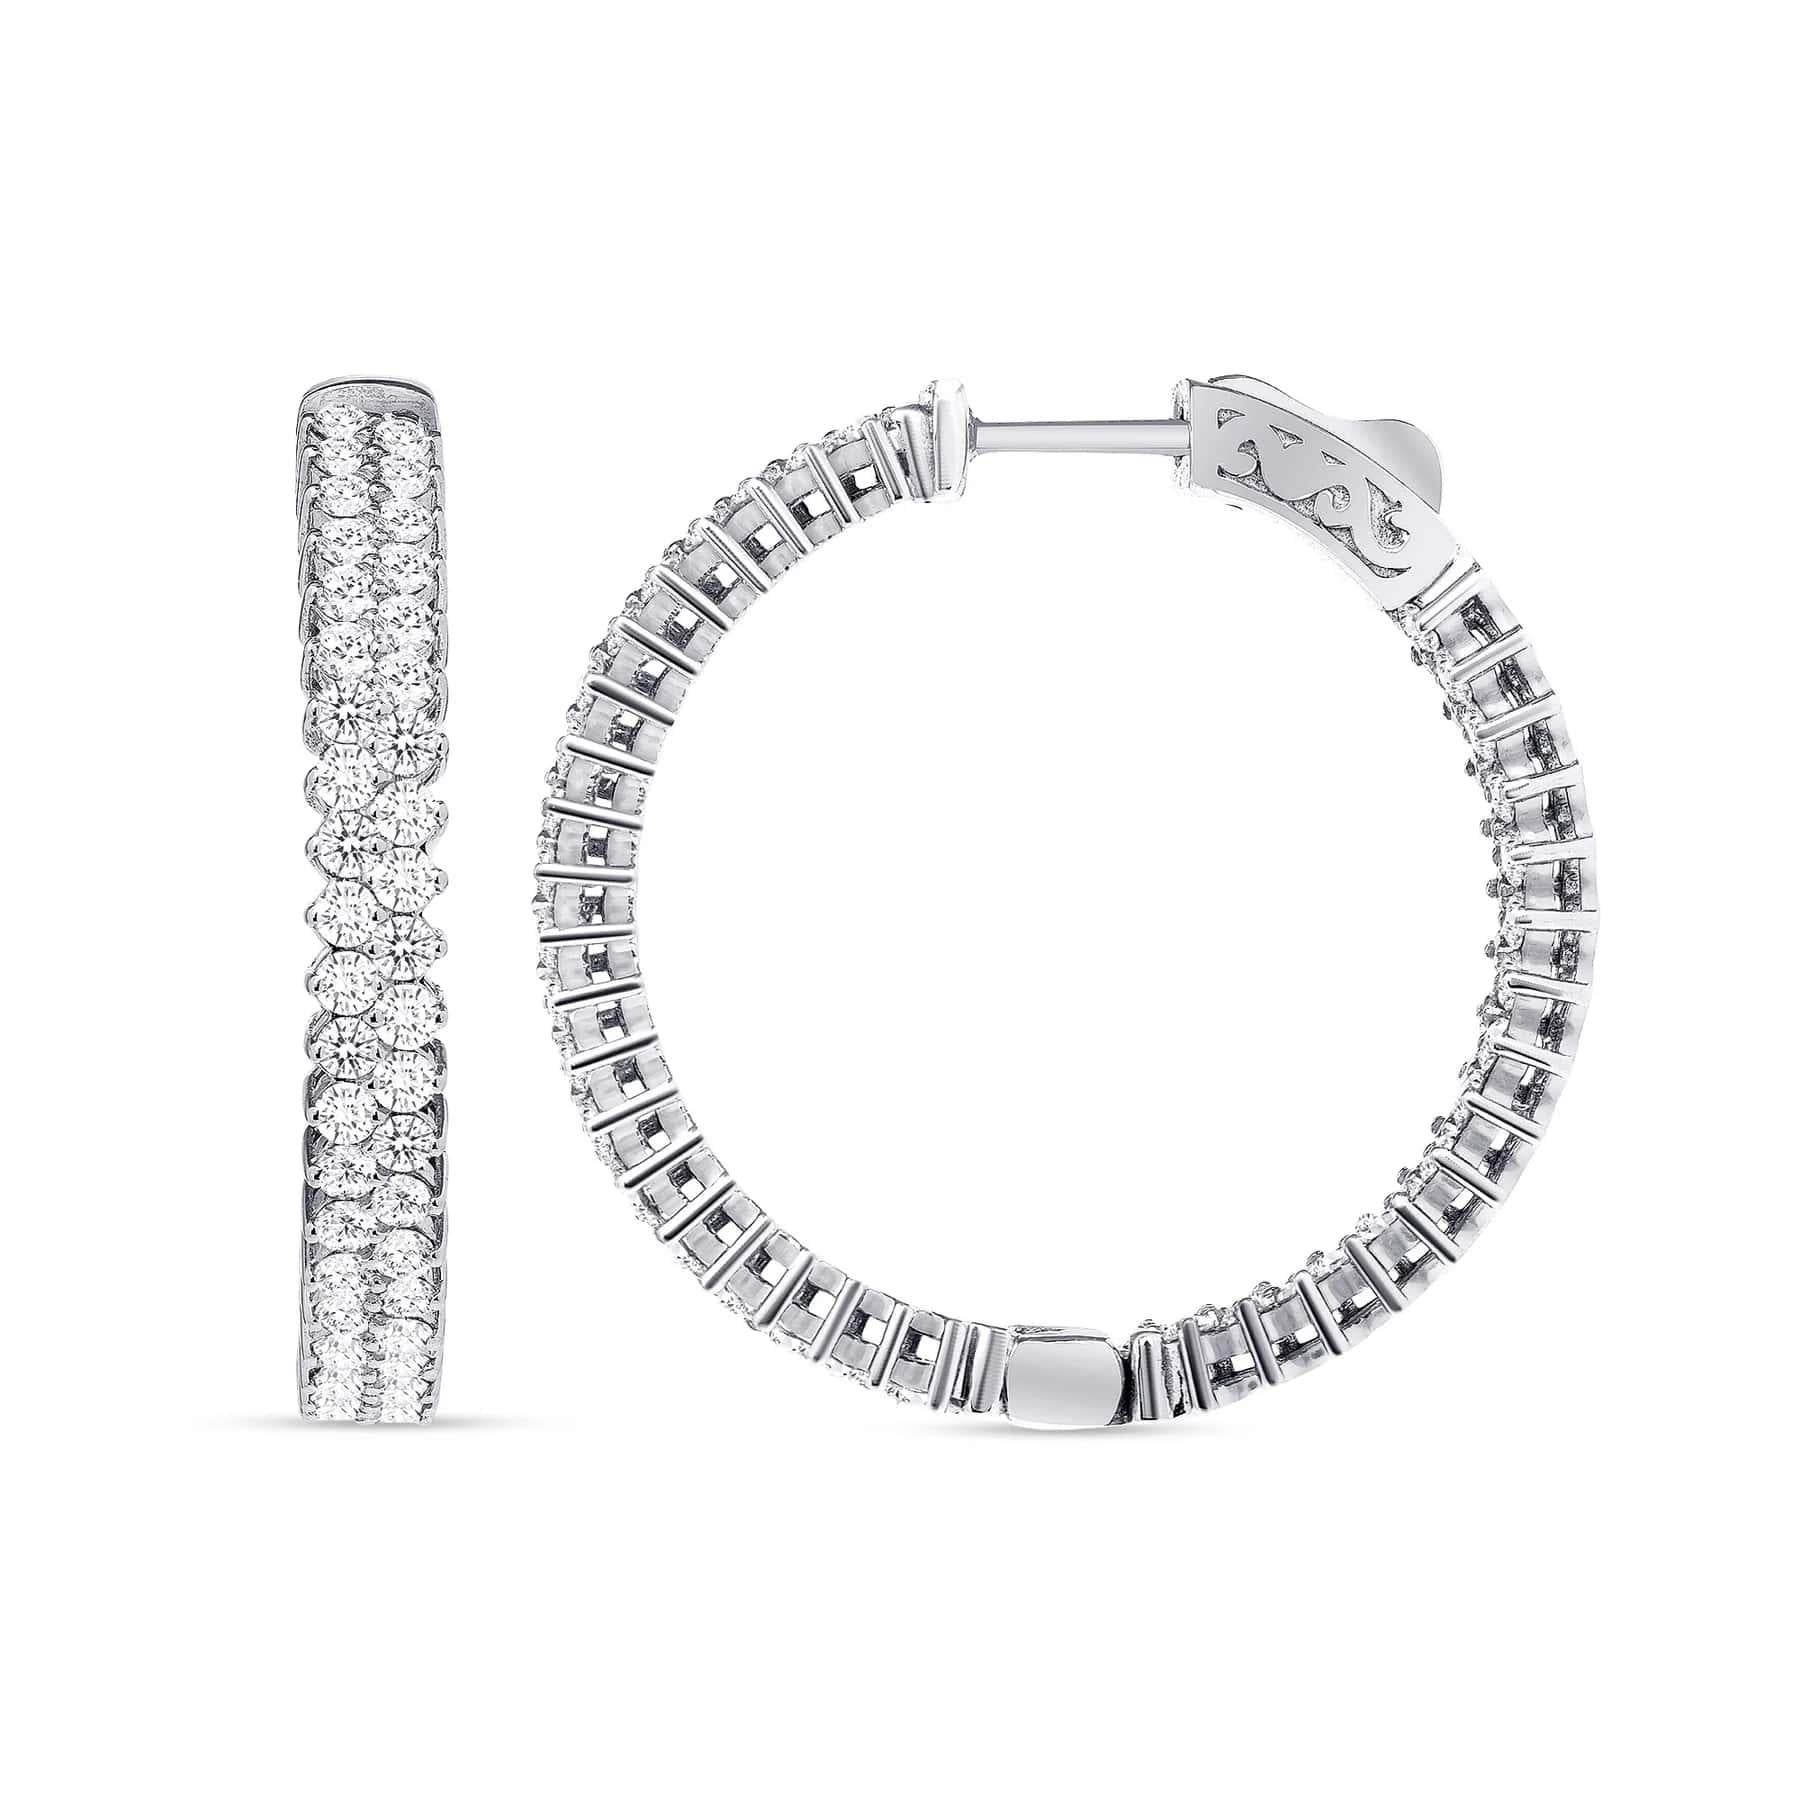 Diese Inside-Out-Diamantring-Ohrringe sind mit wunderschönen runden Diamanten in doppelreihiger Fassung in einer klassischen 14-karätigen Goldfassung ausgestattet. Eine ideale Wahl als Geschenk für Jahrestag, Geburtstag, Hochzeit und